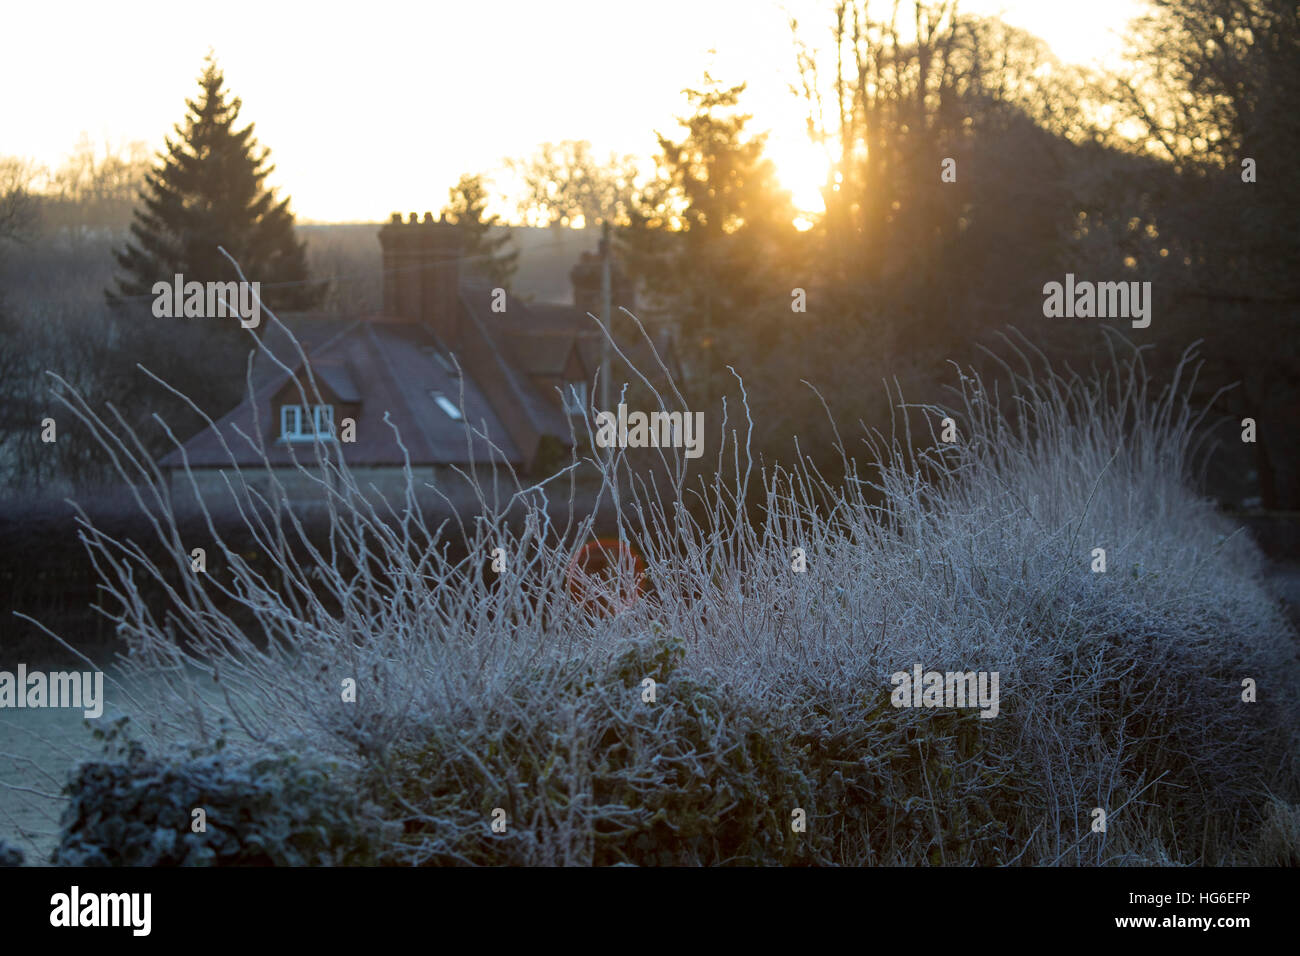 Flintshire, Wales, UK 5. Januar 2017, klarer Himmel und extreme Temperaturen hinterließen viele Teile des Vereinigten Königreichs einschließlich Flintshire, mit Temperaturen weit unter-5 heute morgen Vormittag mit Frost. Gefrorene Landschaft in dem Dorf Nannerch in Flintshire © DGDImages/Alamy Live News Stockfoto